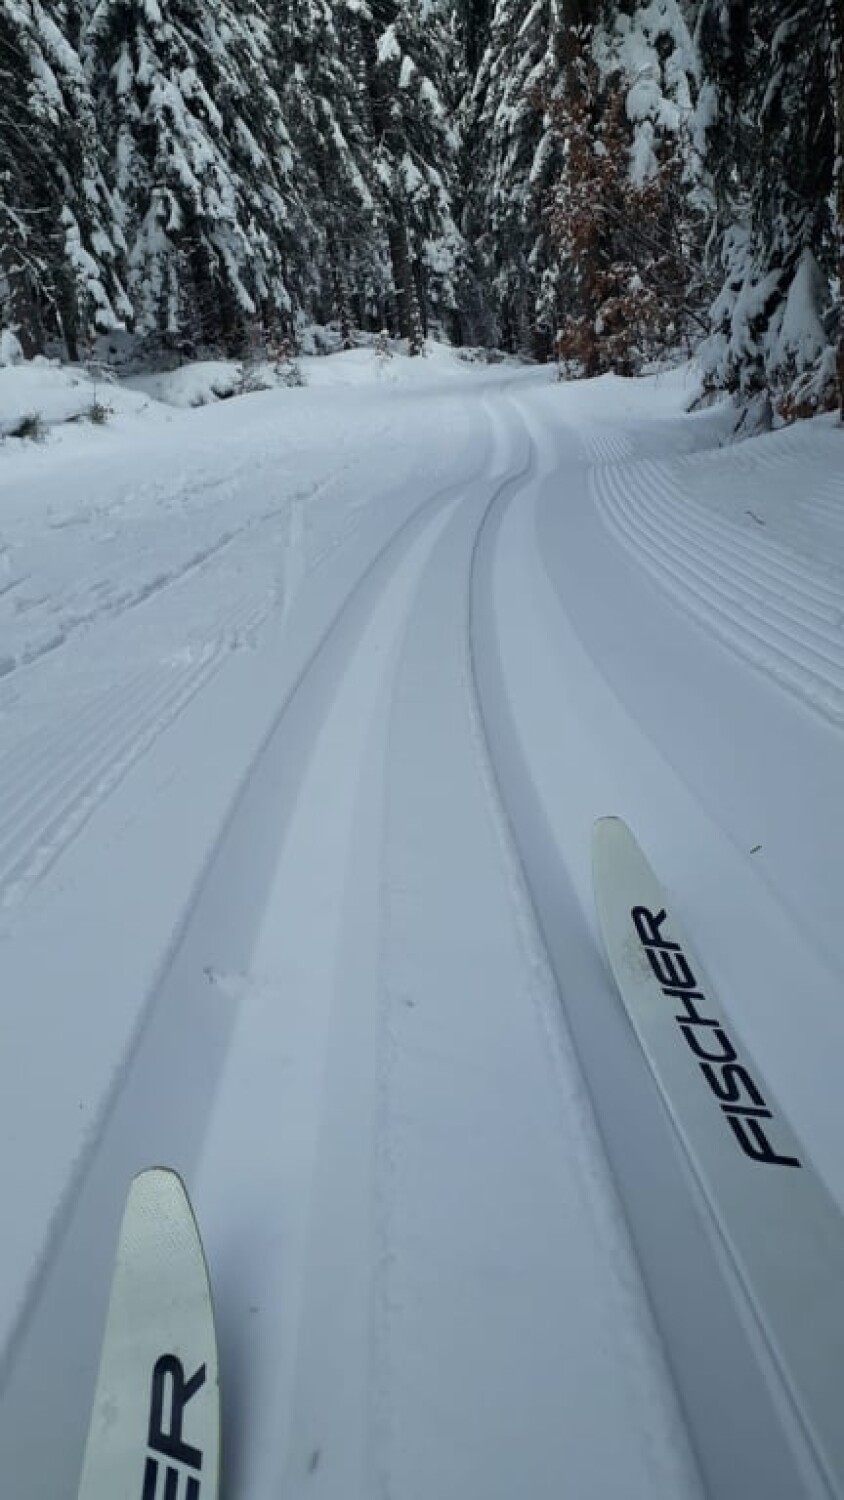 Mekka narciarstwa biegowego okryta śniegiem. W Jakuszycach sezon trwa w najlepsze [ZDJĘCIA]